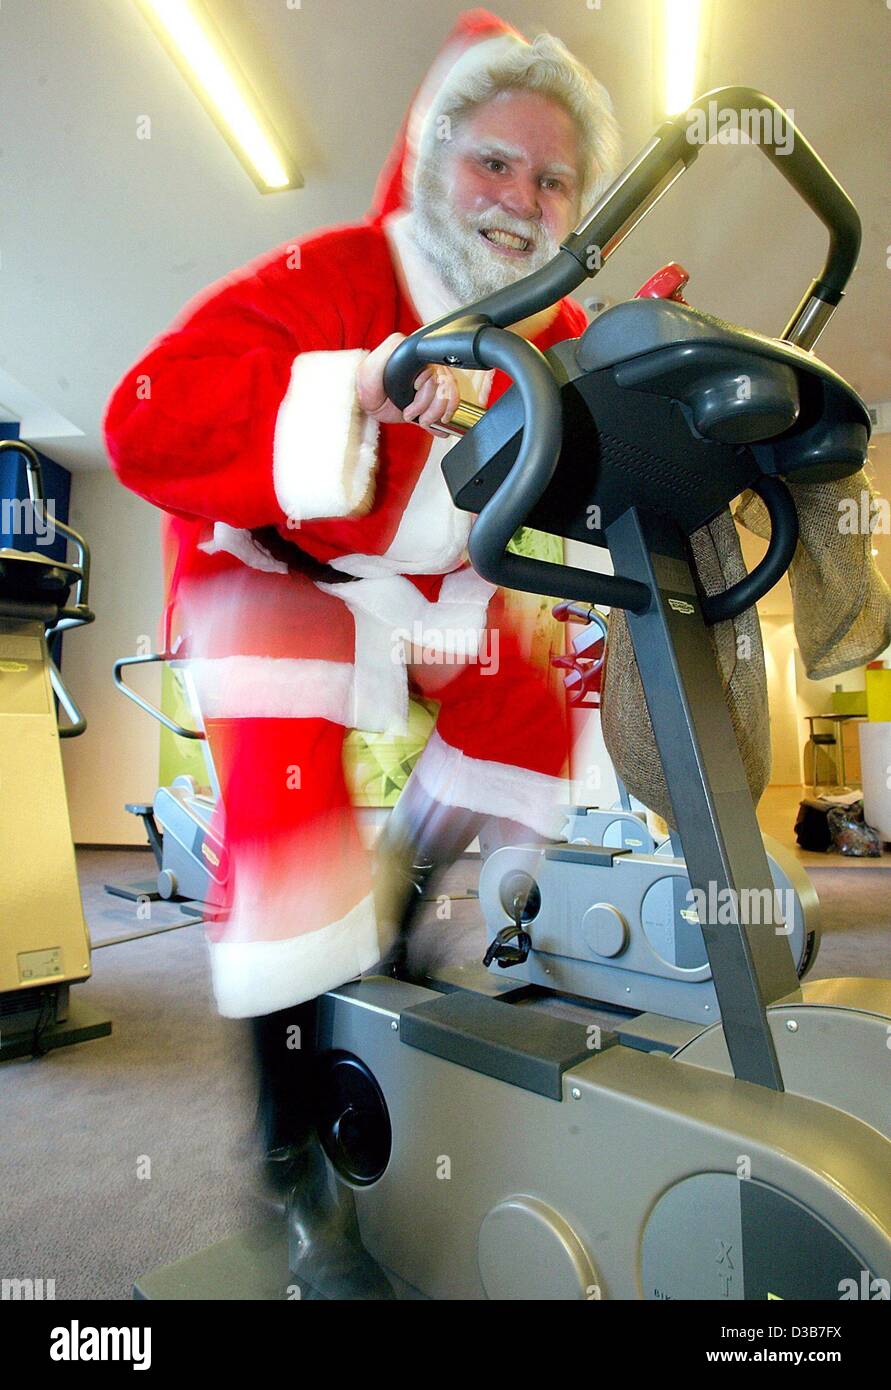 (Dpa) - ein Mann, der als Weihnachtsmann verkleidet klappt in einem Fitness-Studio in Berlin, 18 November 2002. Santa muss fit für Weihnachten, da die Lieferung von Geschenken kann harte Arbeit sein... Stockfoto